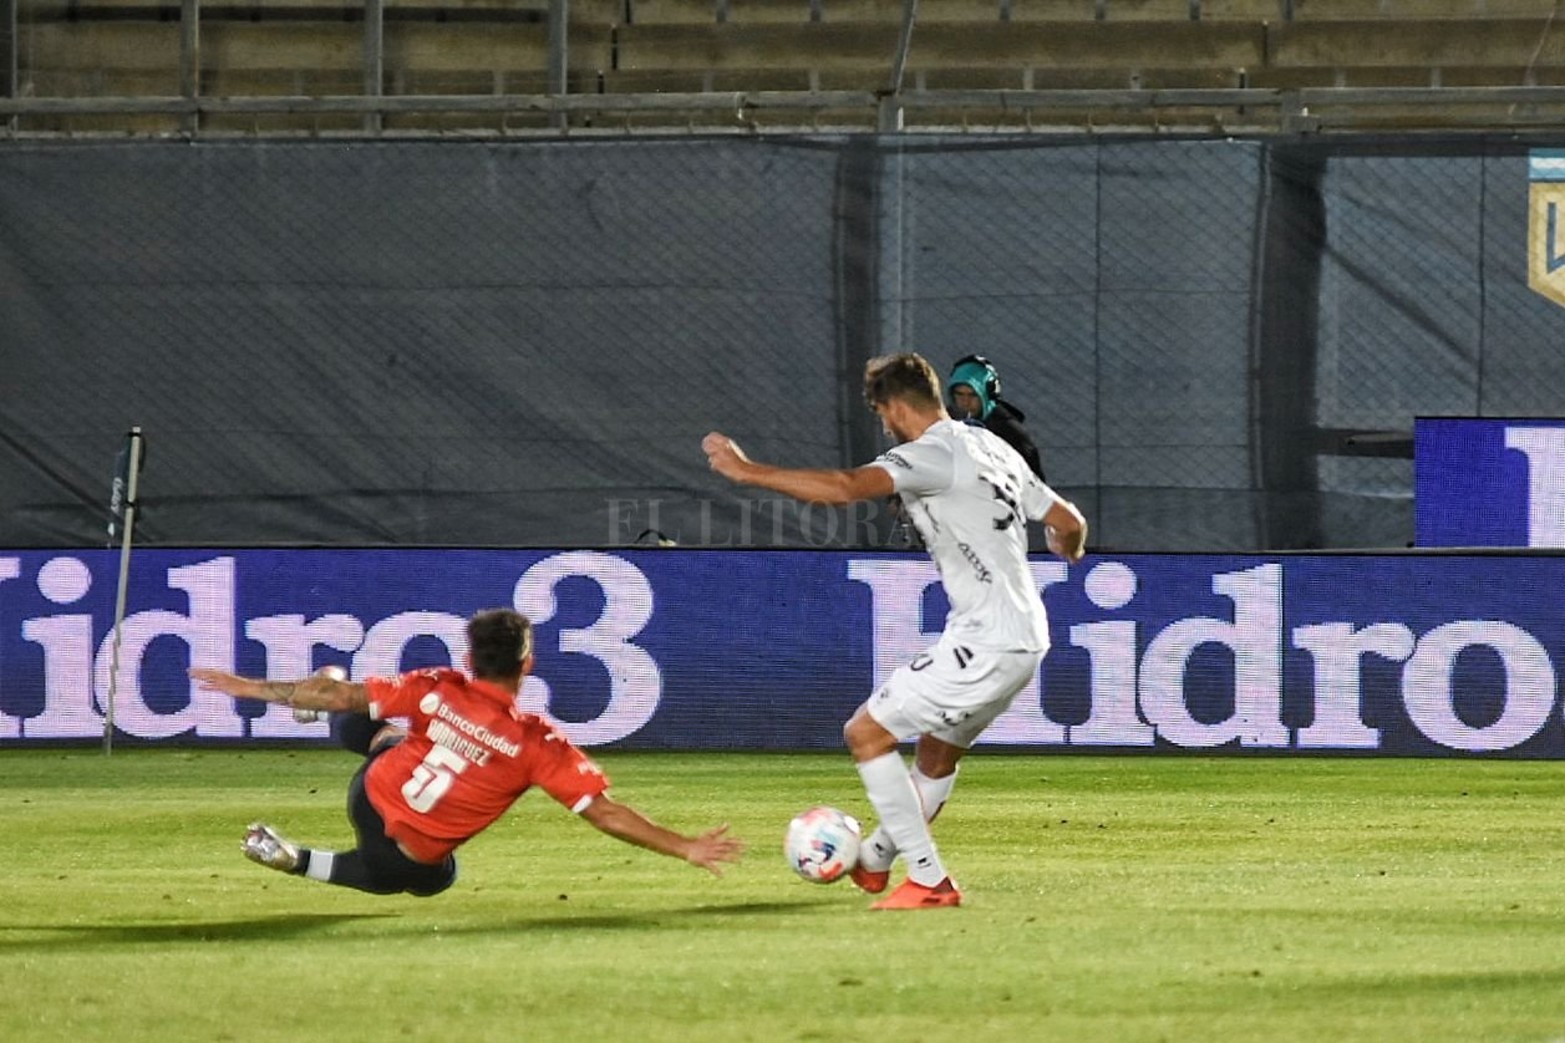 El segundo gol. Santiago Pierotti le pega suave y la pelota se levanta por sobre el defensor.